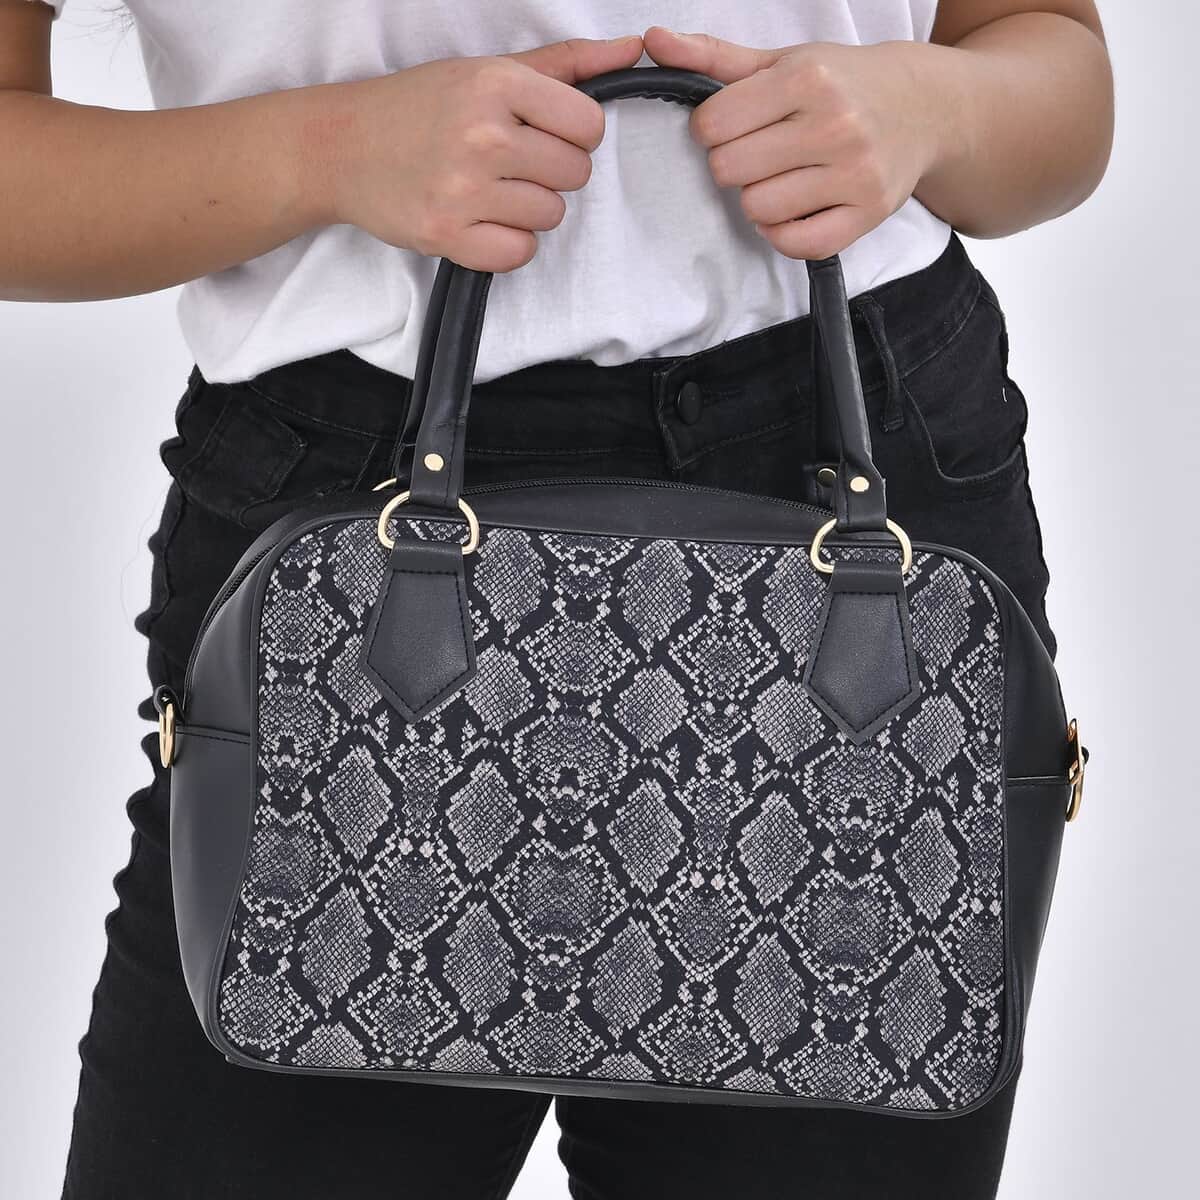 Black Snake Skin Print Faux Leather Crossbody Bag with Detachable Shoulder Strap image number 2